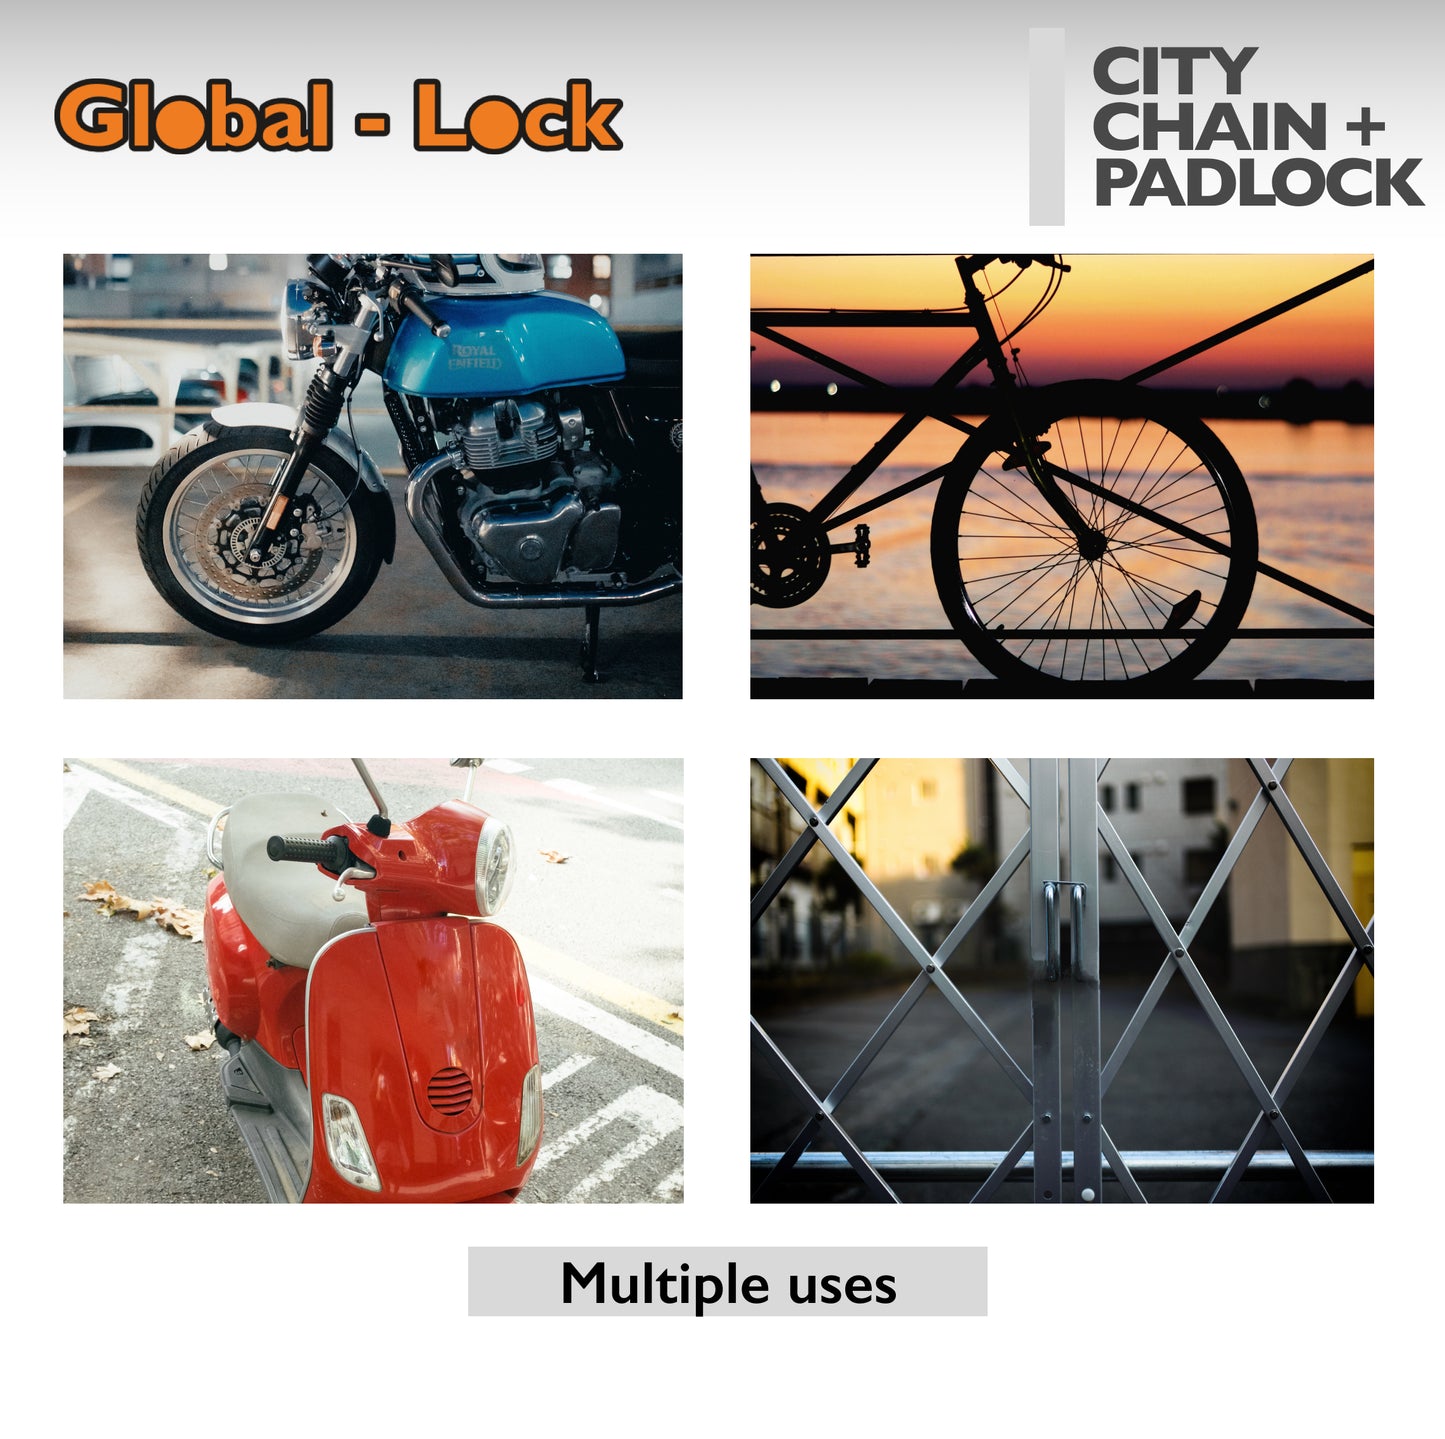 Kit catena + lucchetto Global-Lock CITY